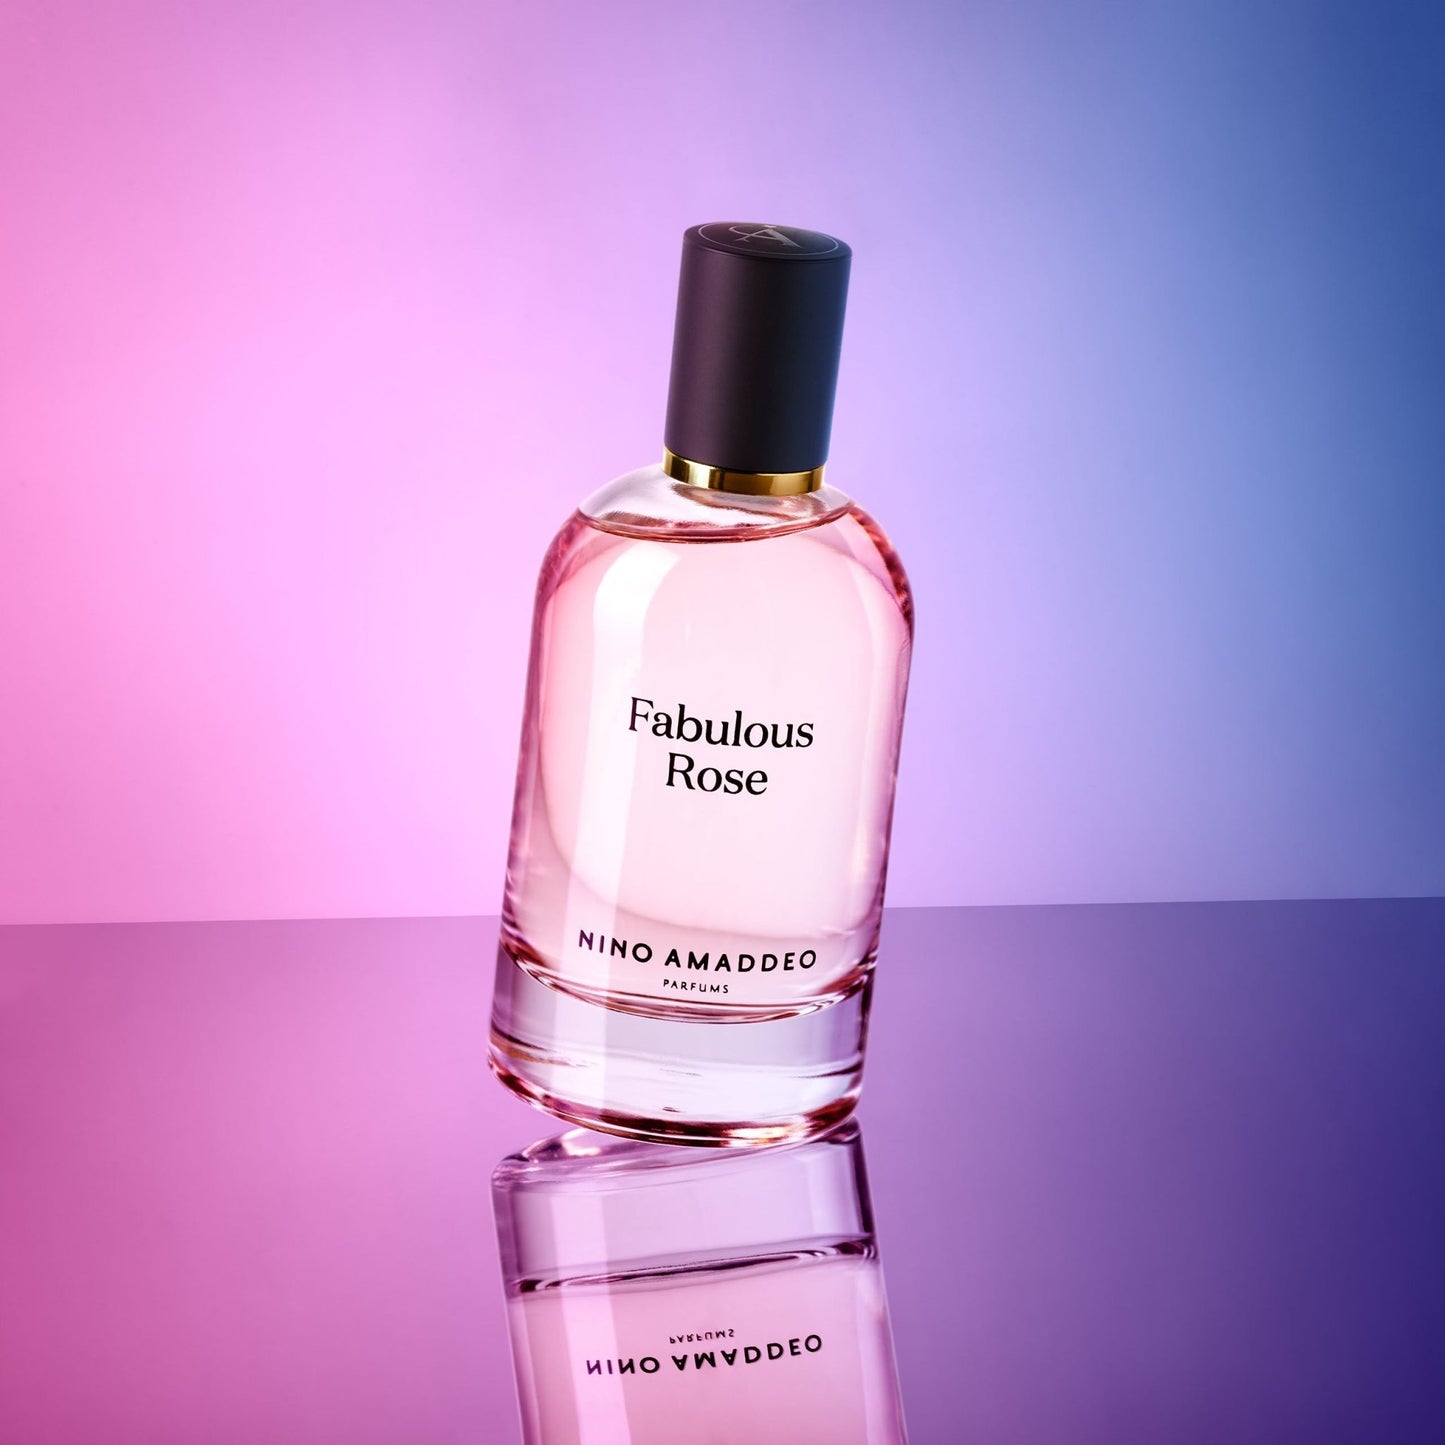 Nino Amaddeo Fabulous Rose Fragrances 3.4 oz/100 ml ScentRabbit